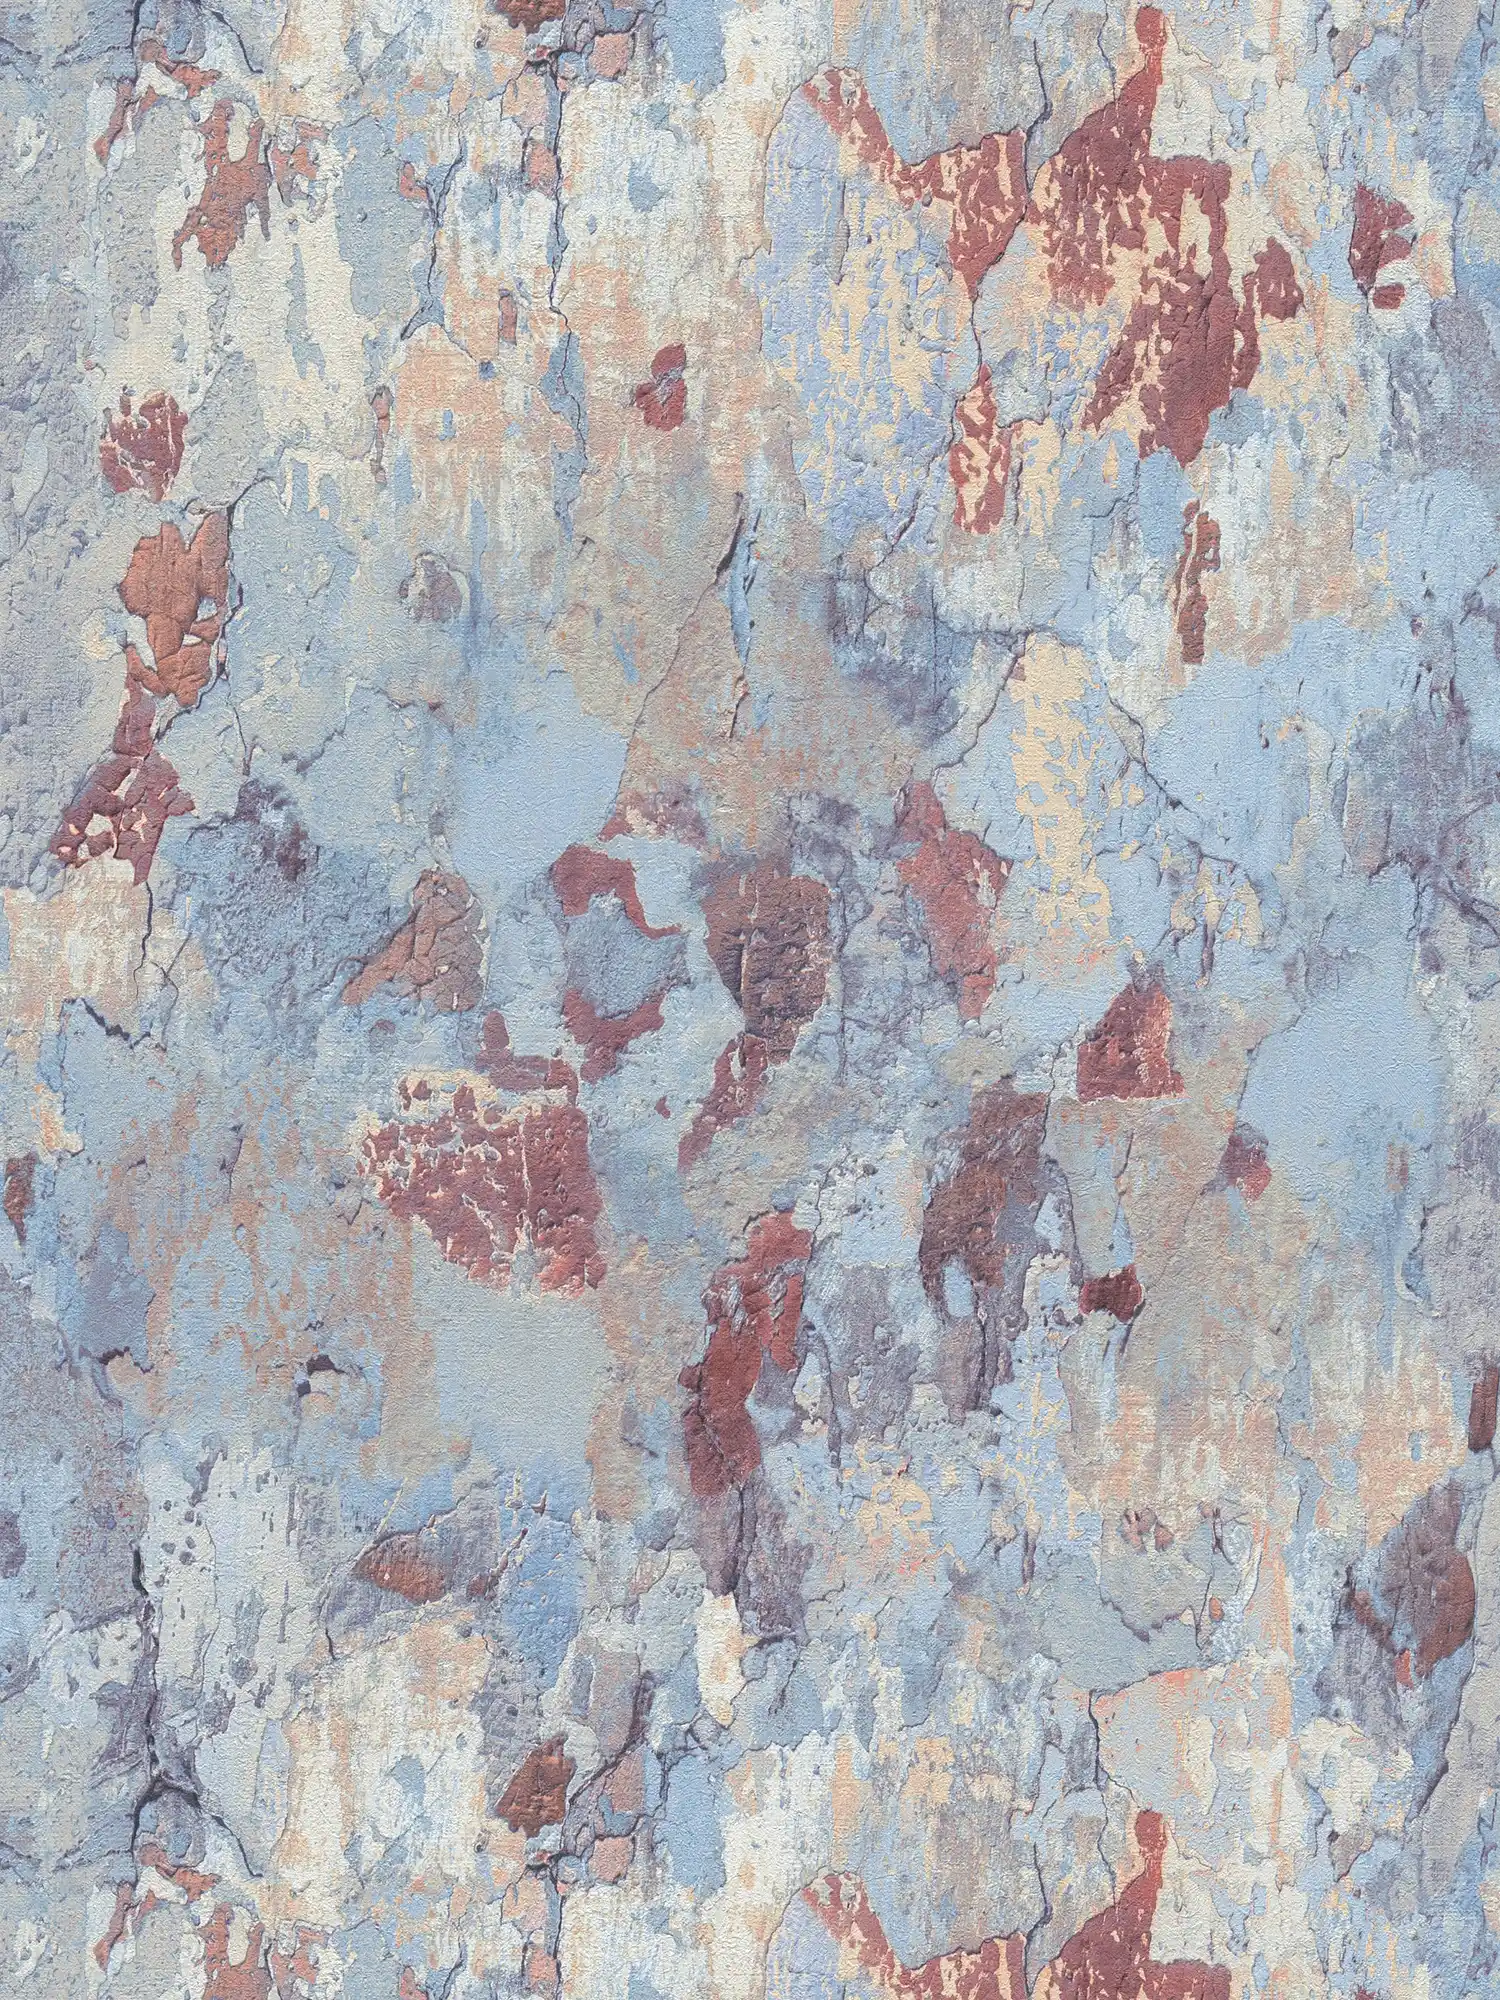 Wallpaper 3D rustic wall look in industrial style - beige, blue, brown
